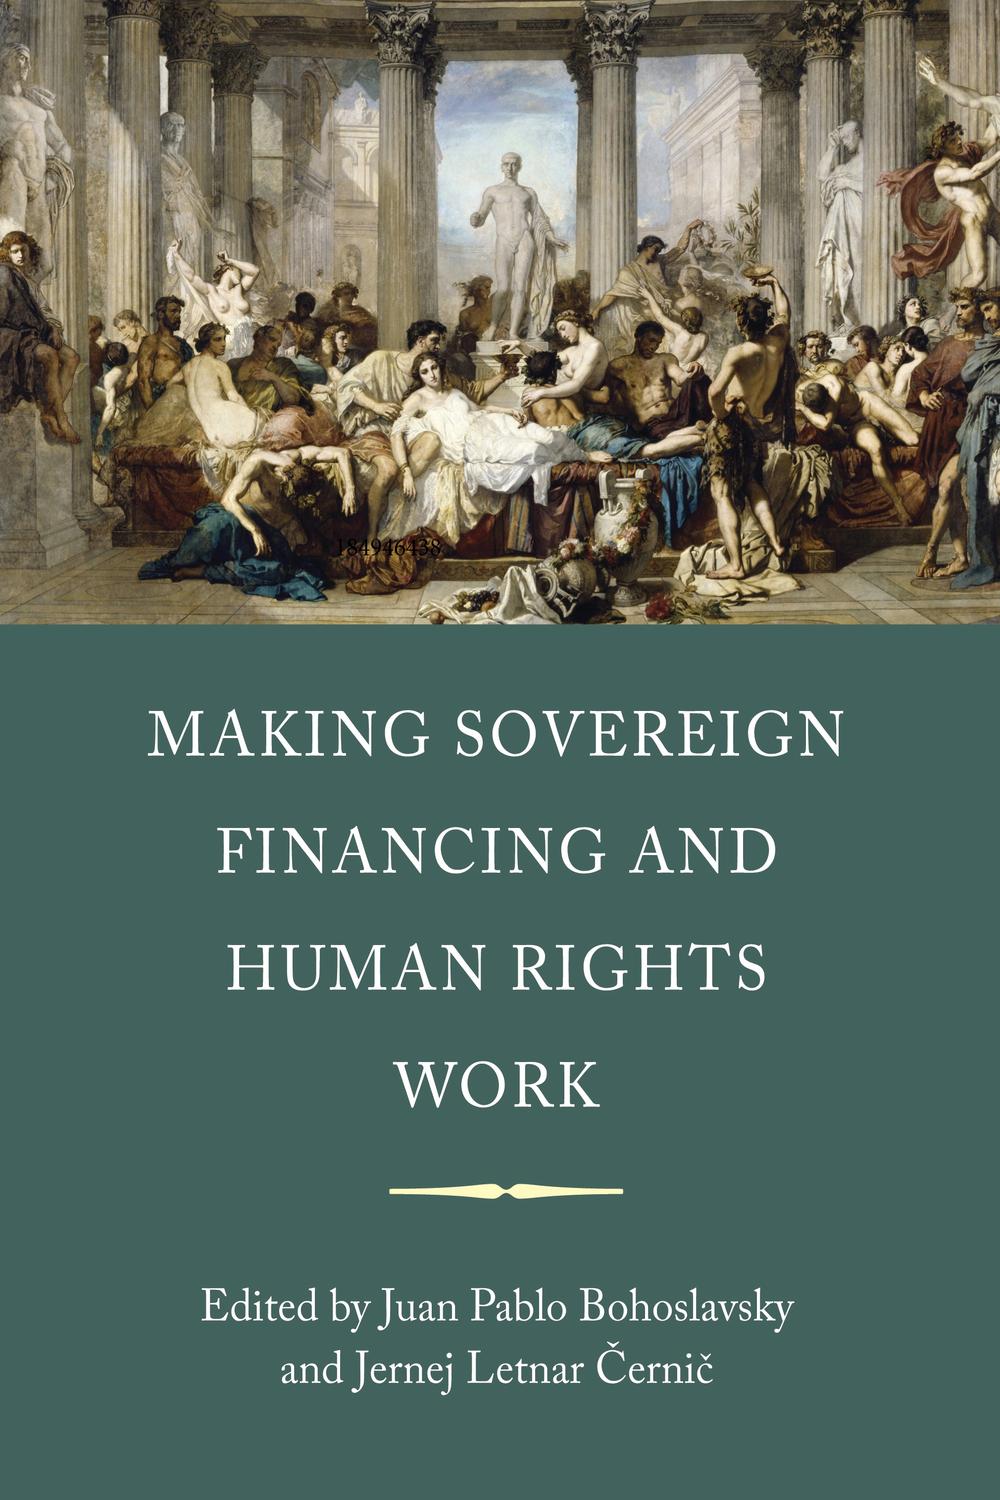 Making Sovereign Financing and Human Rights Work - Juan Pablo Bohoslavsky, Jernej Letnar Cernic